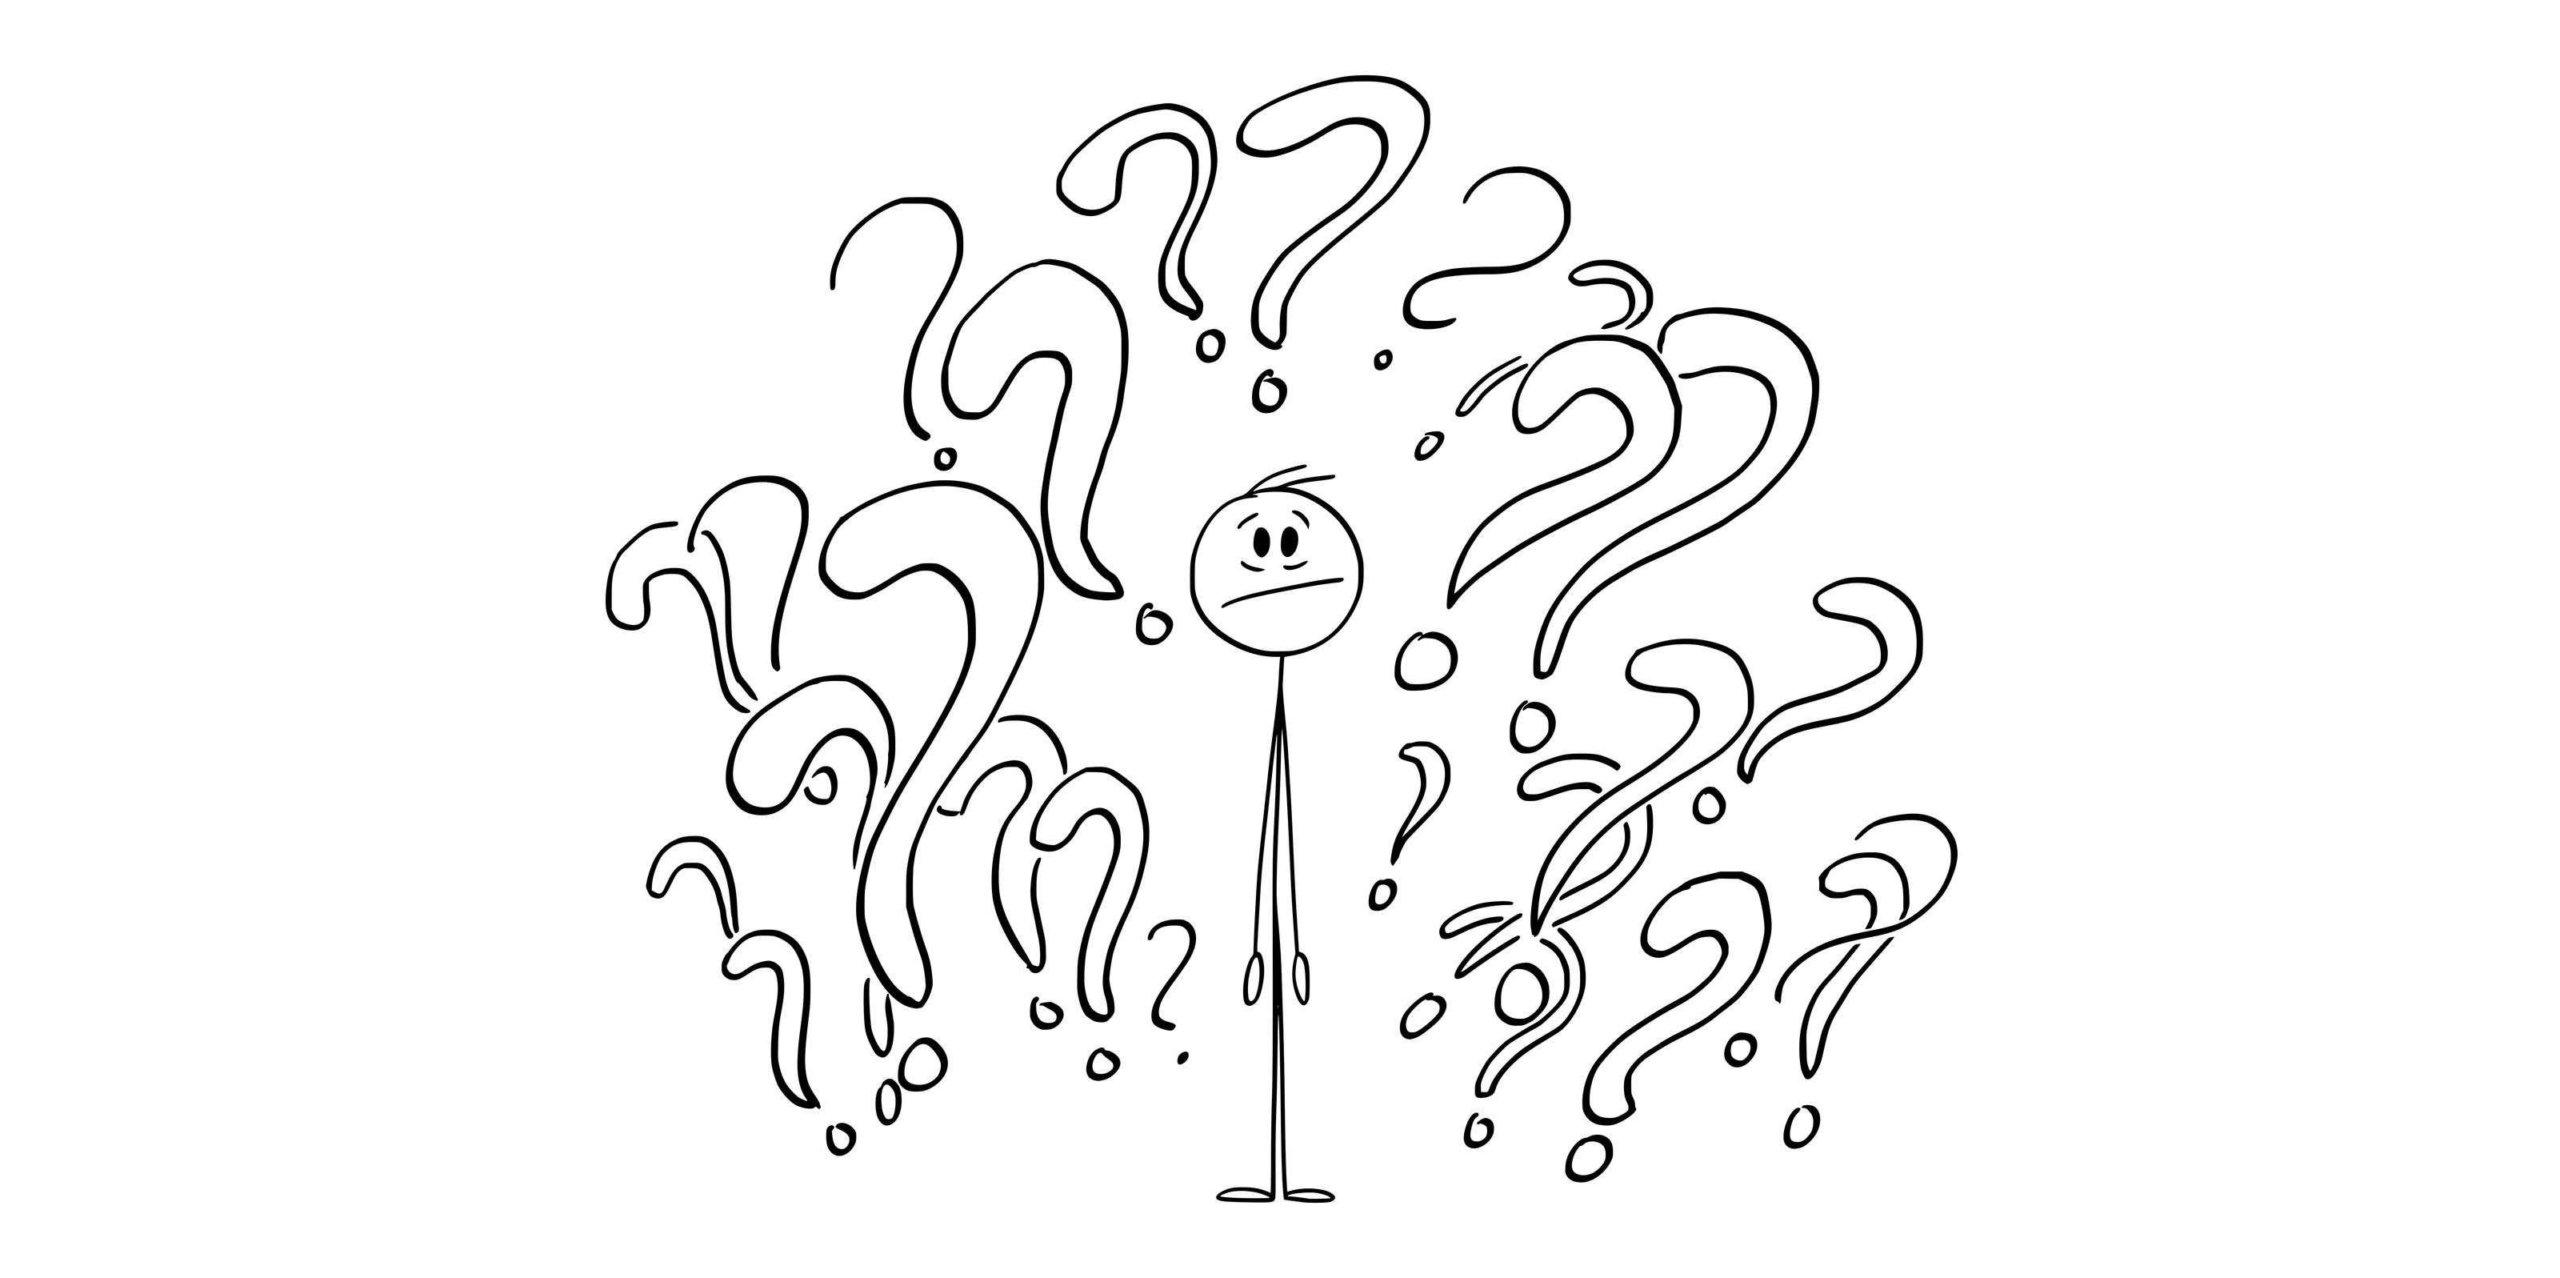 Person, umgeben von Fragezeichen oder Symbolen, unsicher auf der Suche nach Antworten, Vektor-Cartoon-Strichmännchen-Illustration